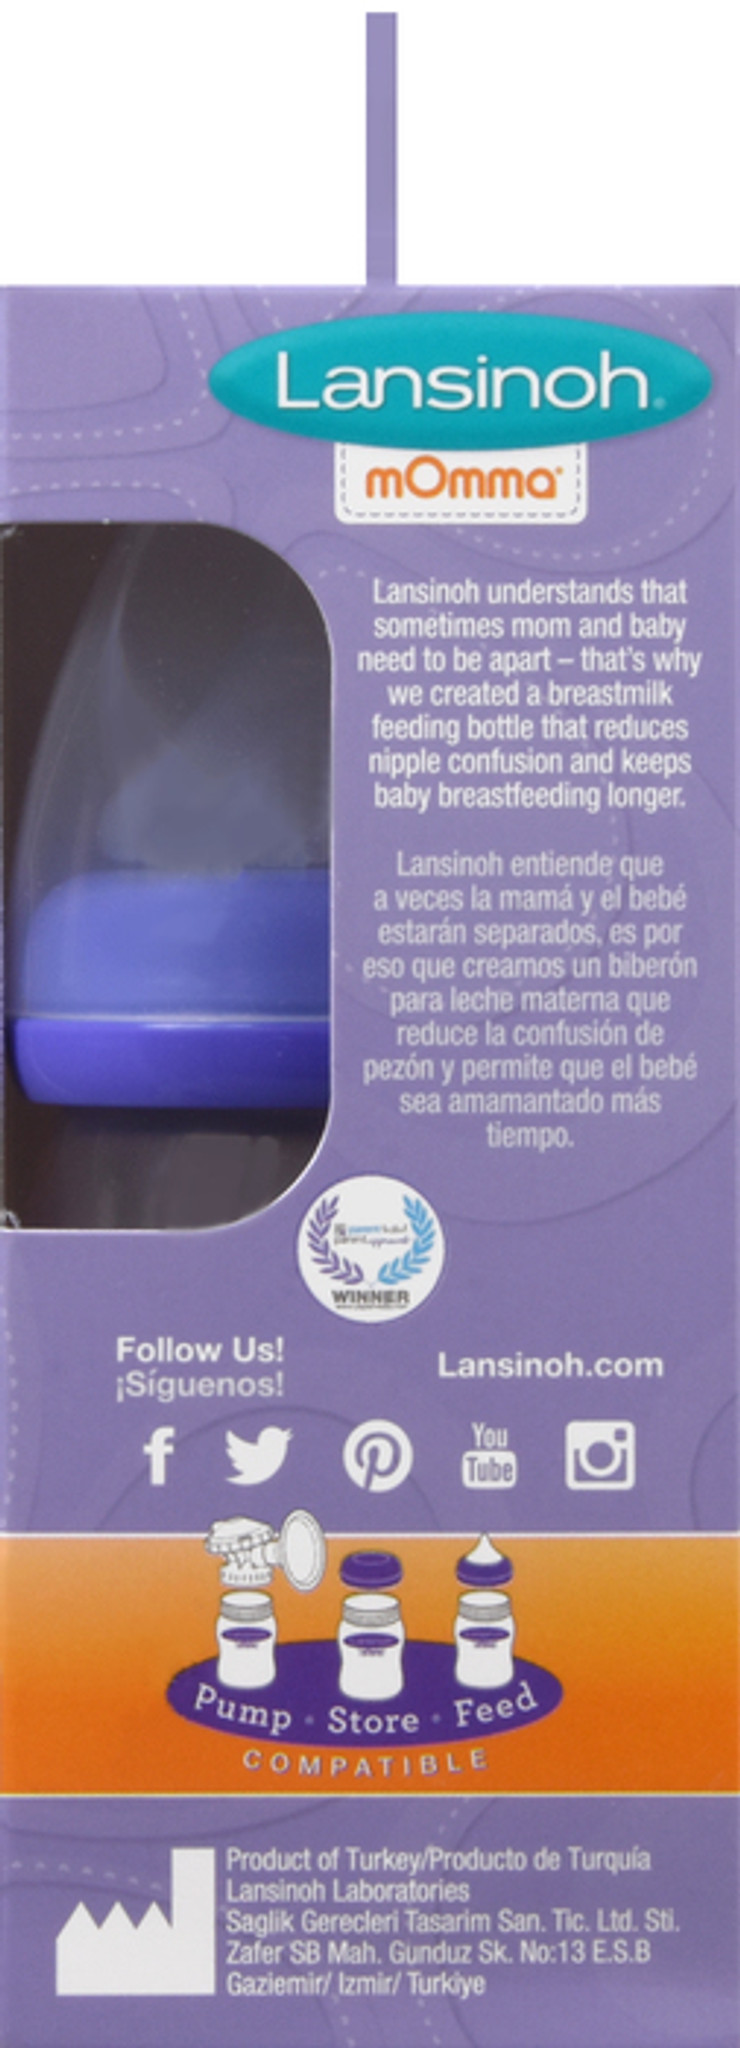 3 Pack Lansinoh Baby Feeding Bottles Natural Wave Nipple Slow Flow 5oz